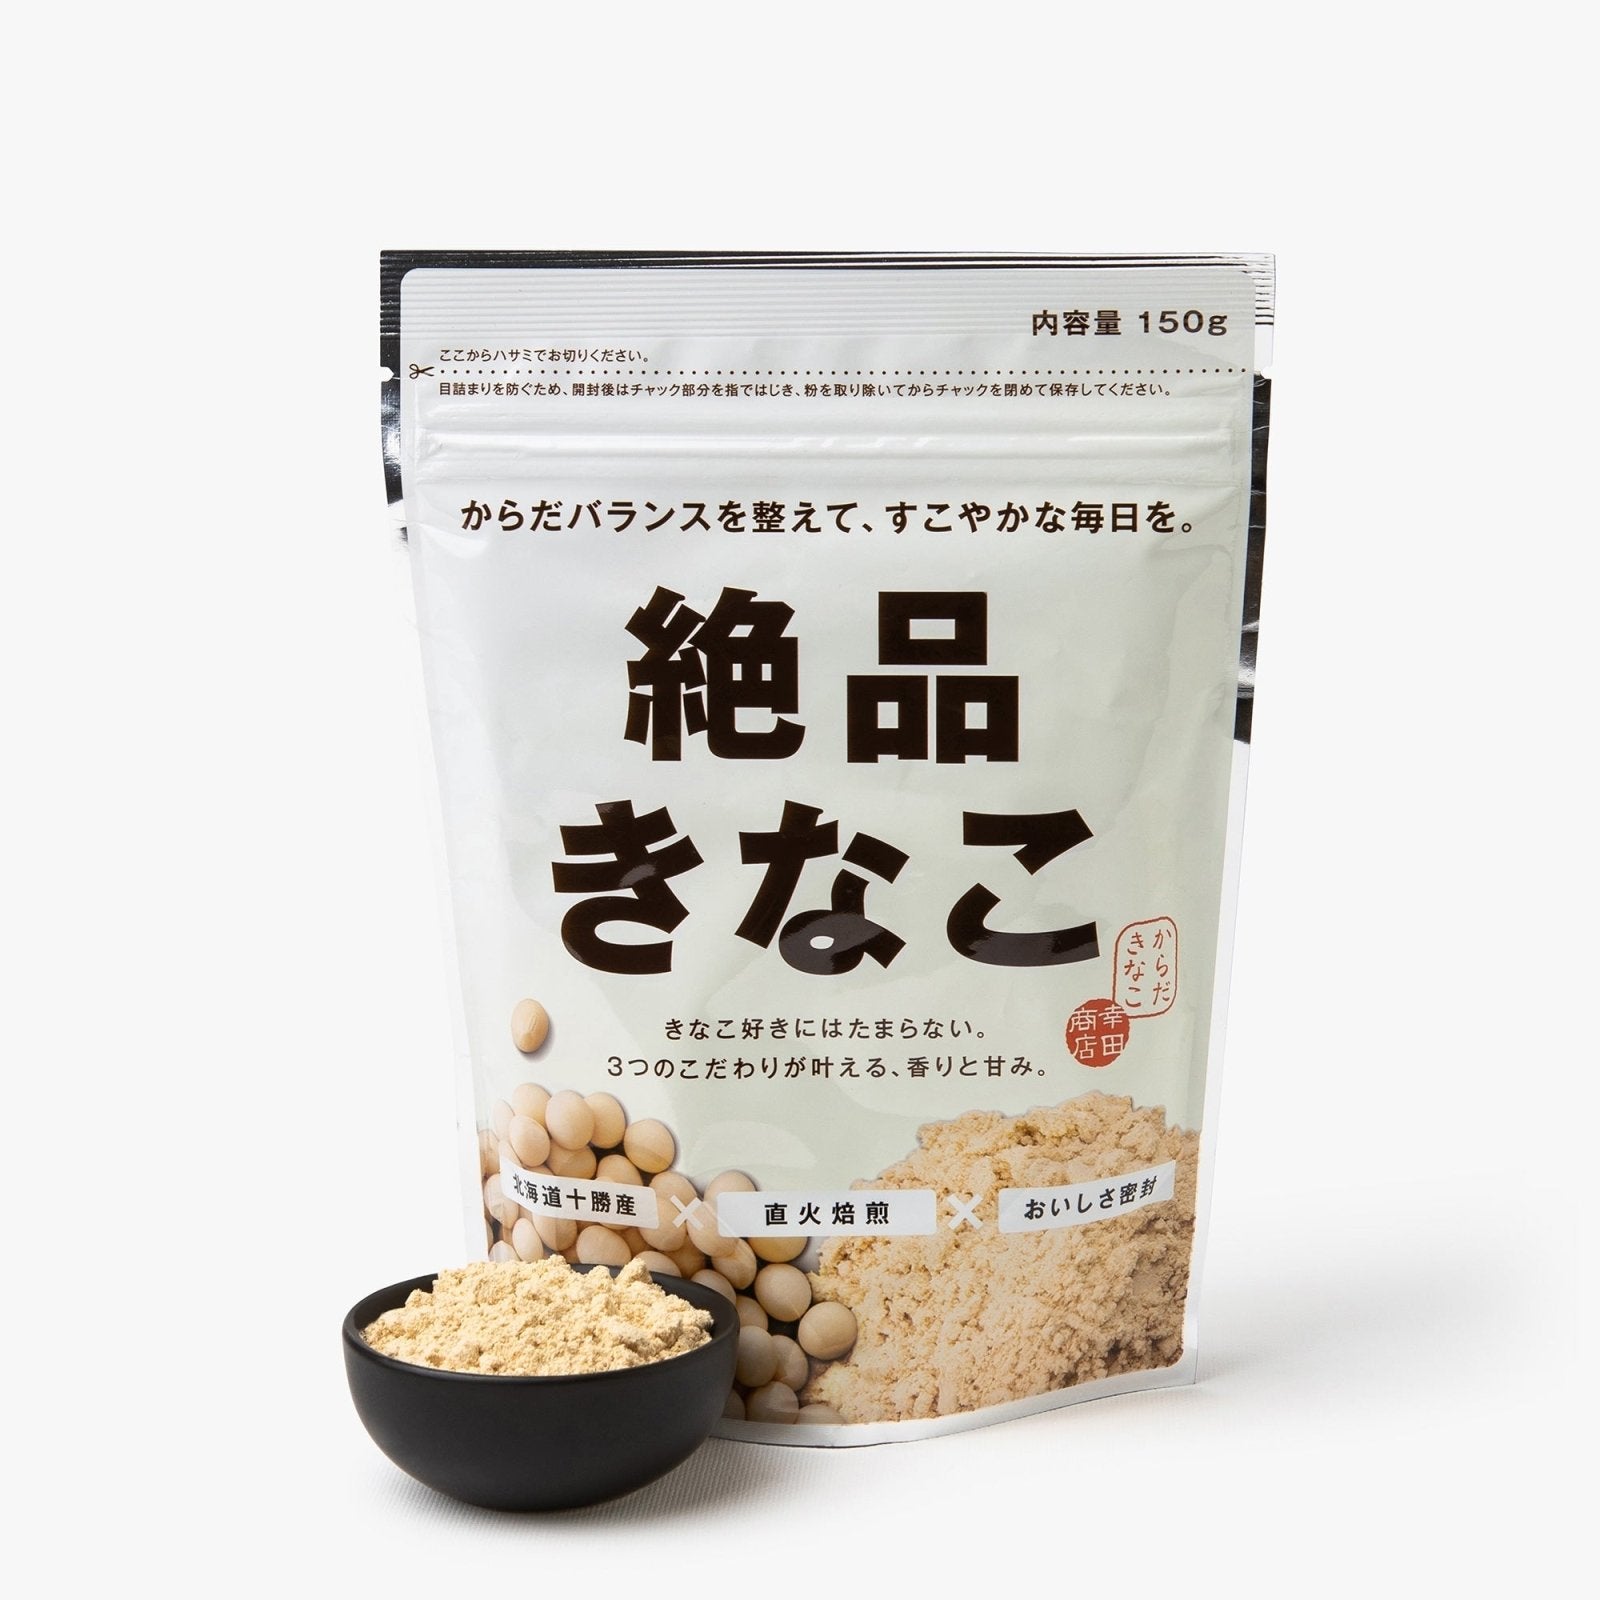 Poudre de soja premium - 150g - Kota shoten - iRASSHAi